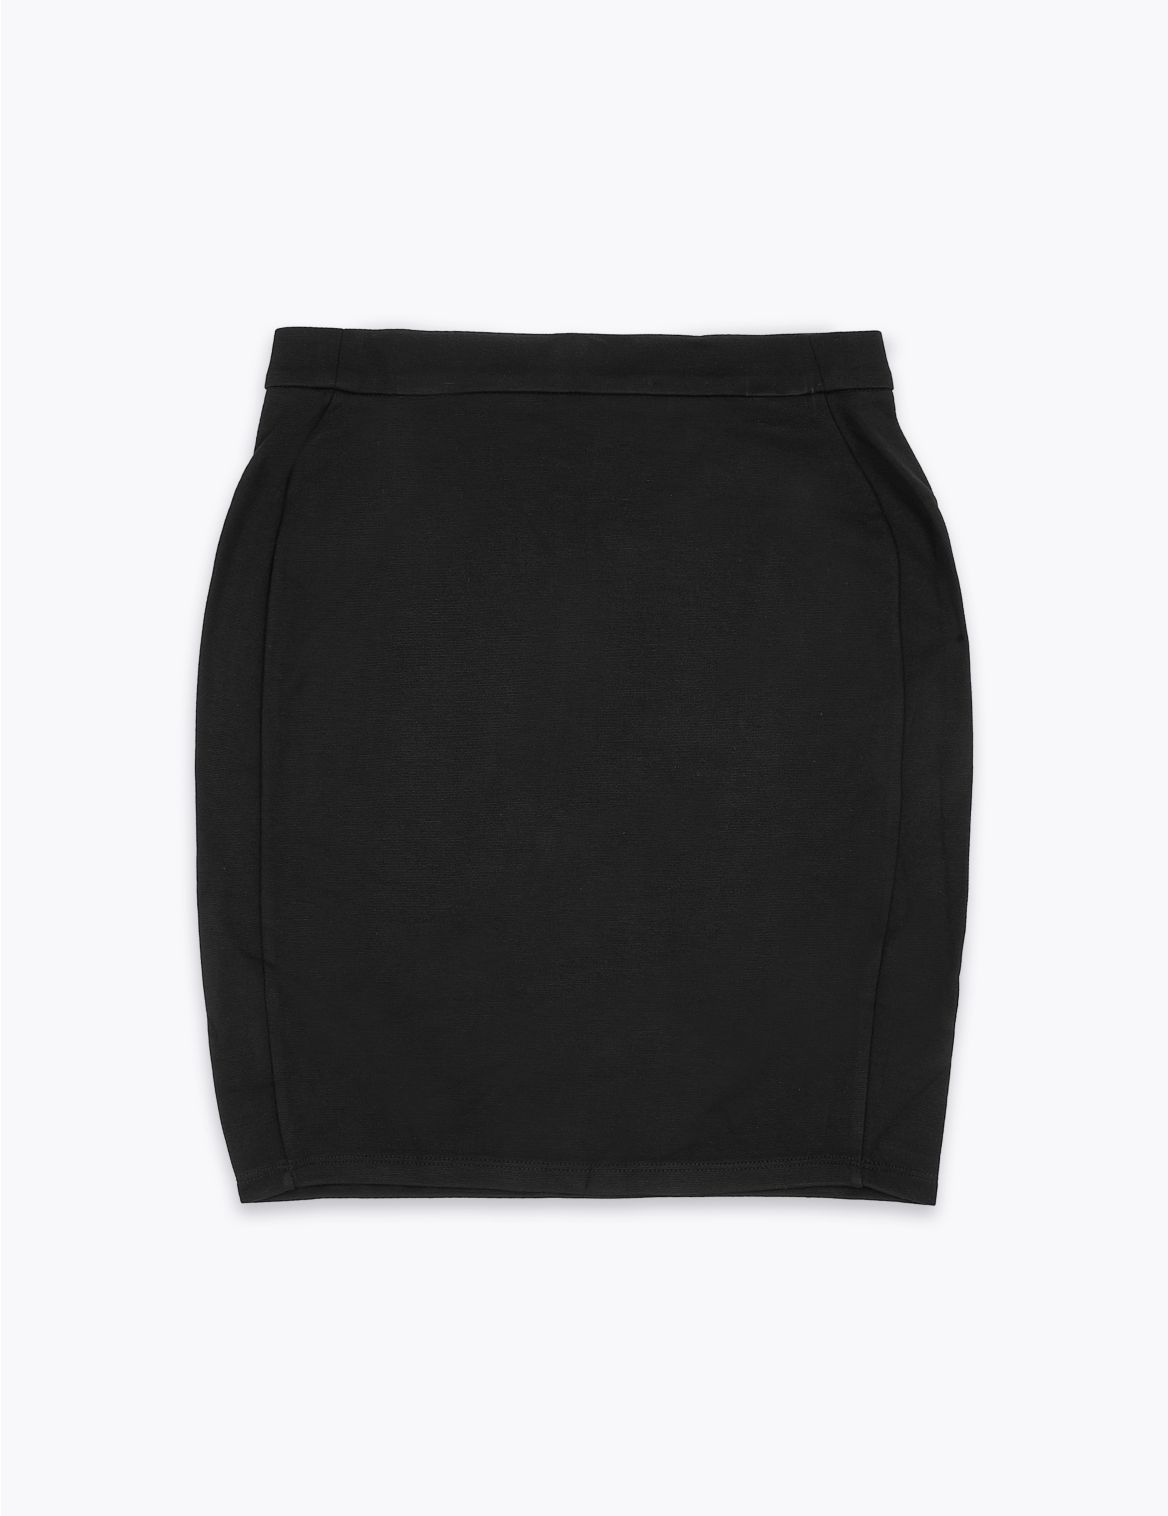 Senior Girls' Zip Tube School Skirt black